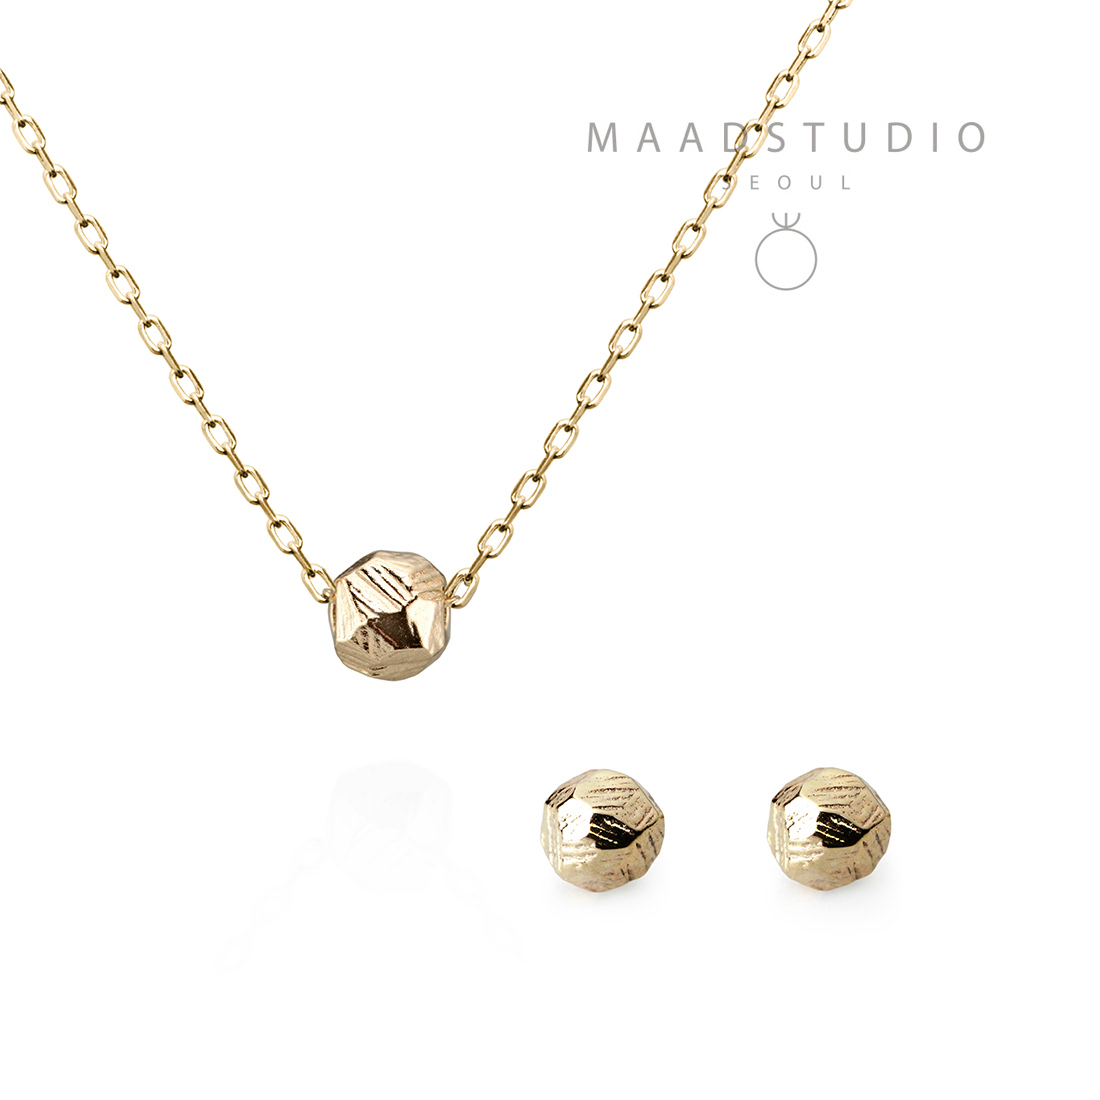 Grit stone pendant & earring Set 14k gold